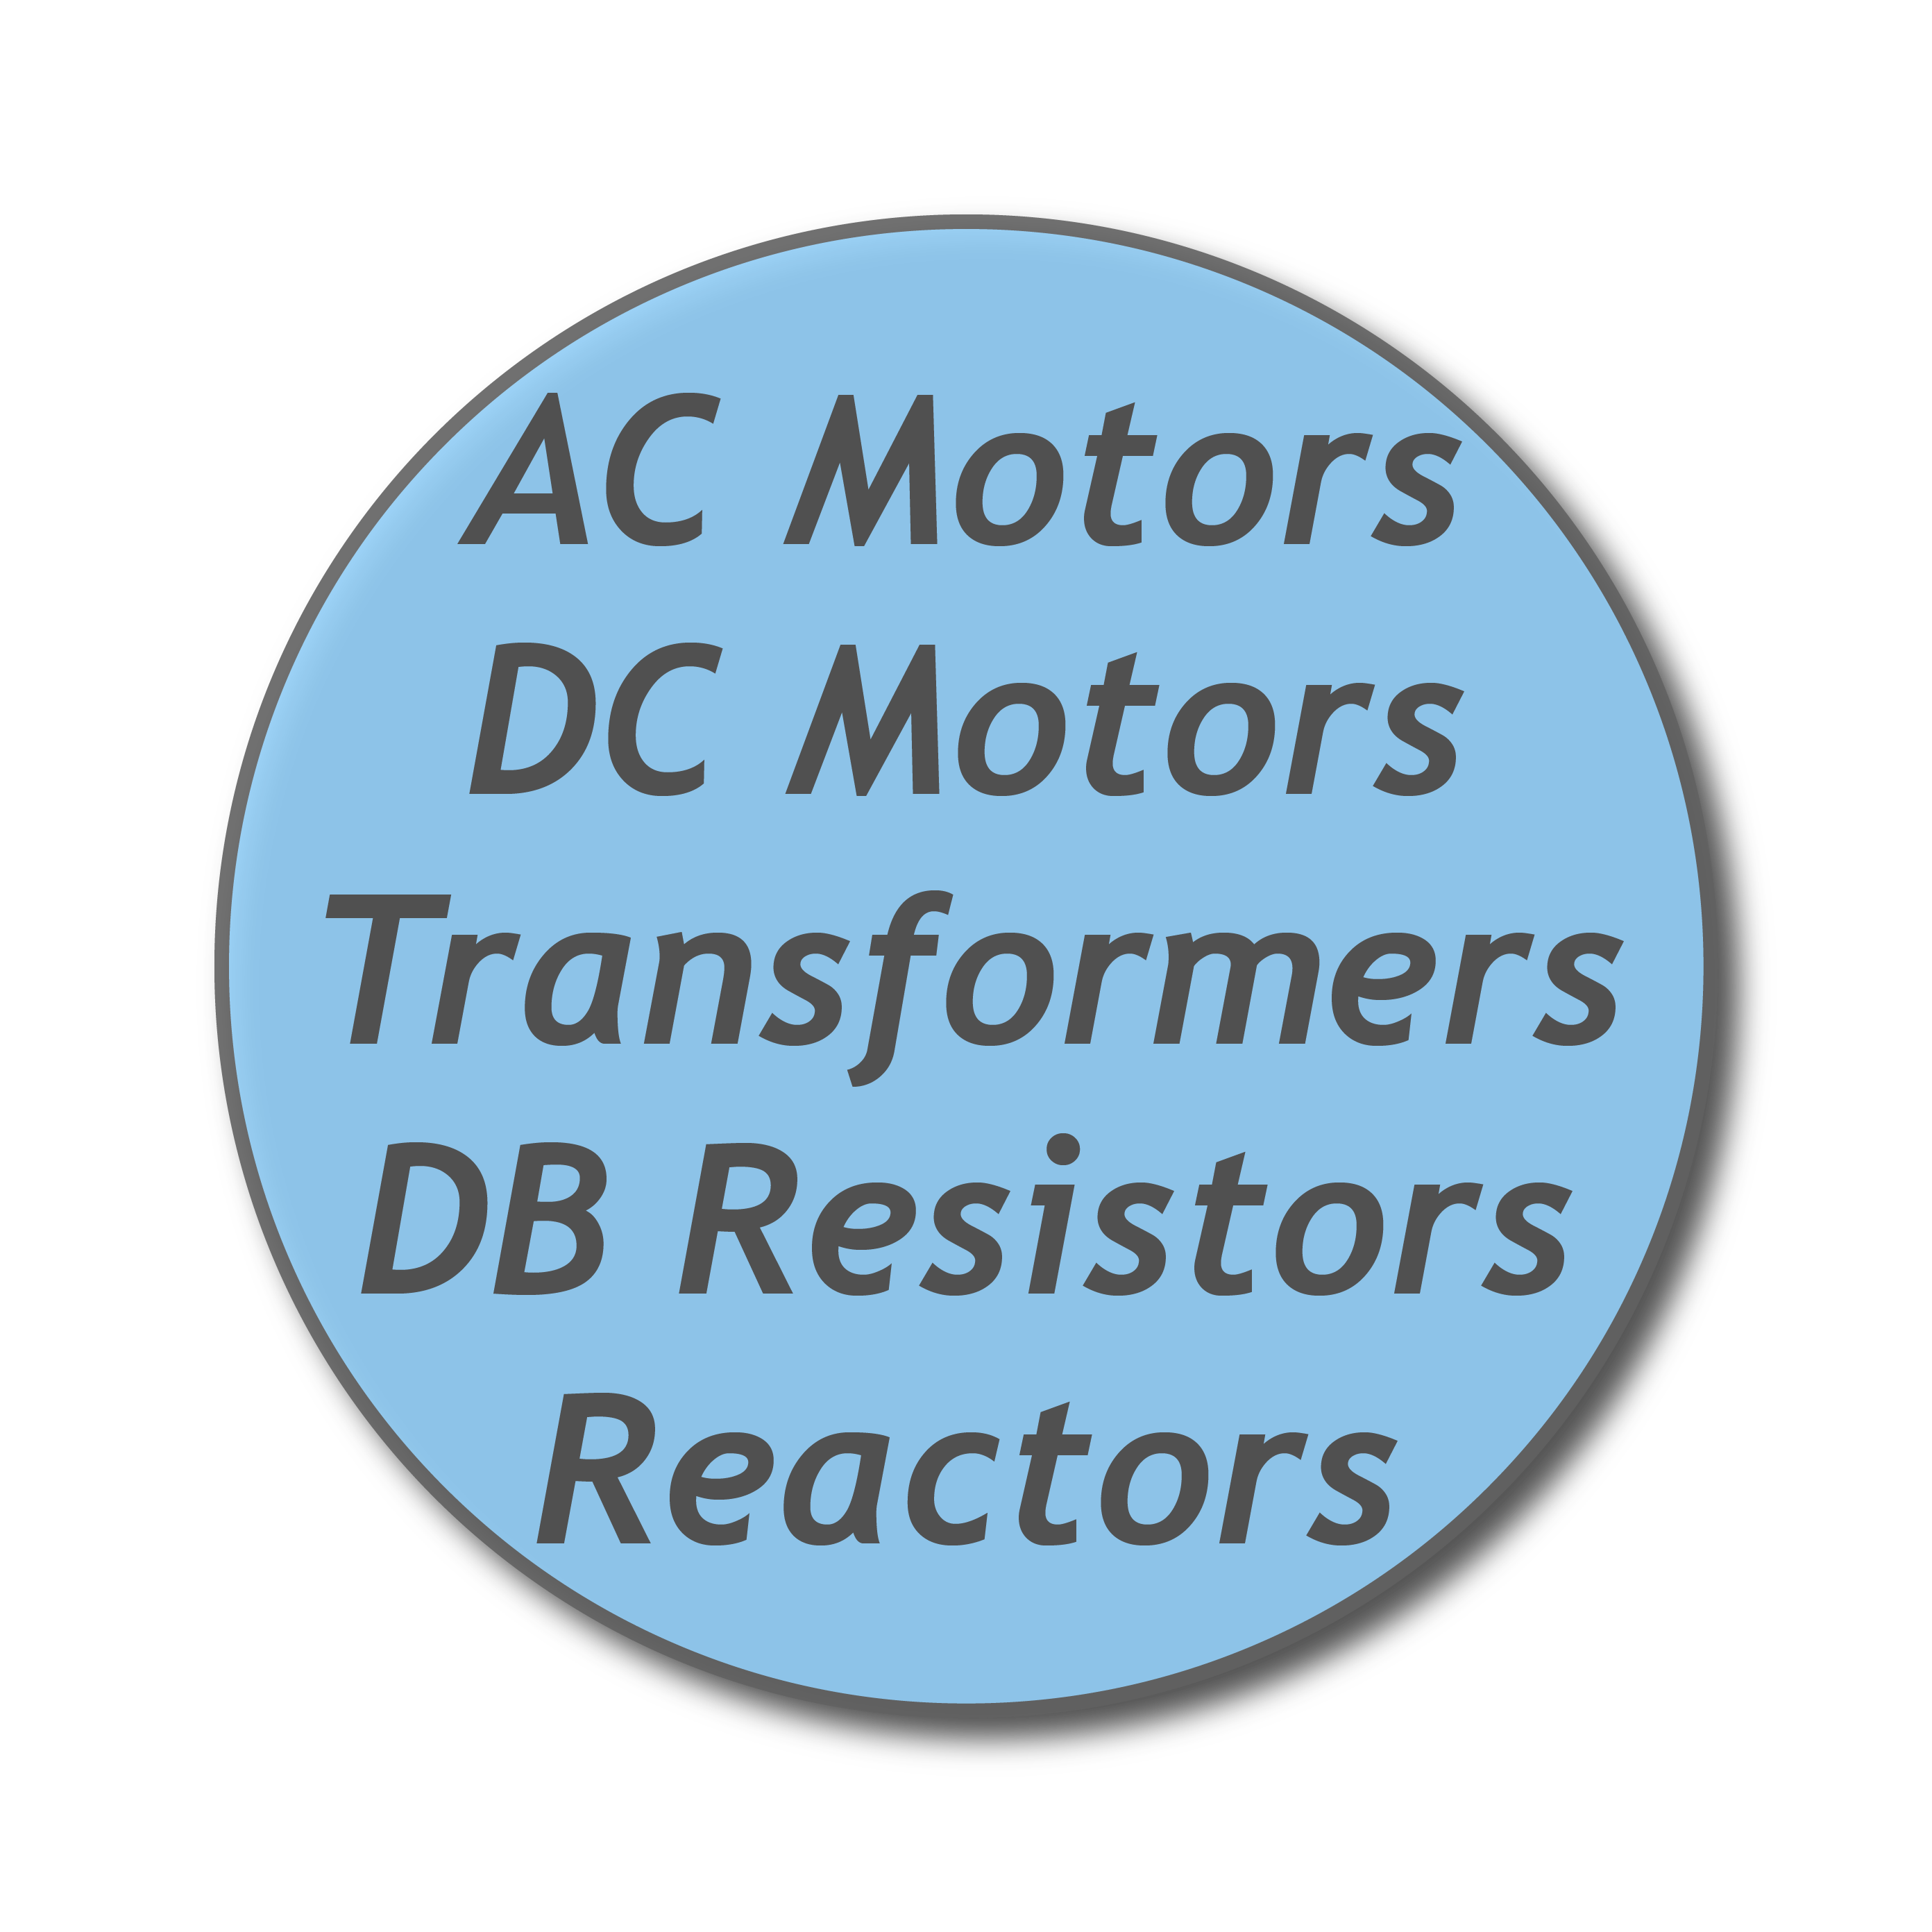 AC Motors, DC Motors, Transformers, DB Resistors, Reactors